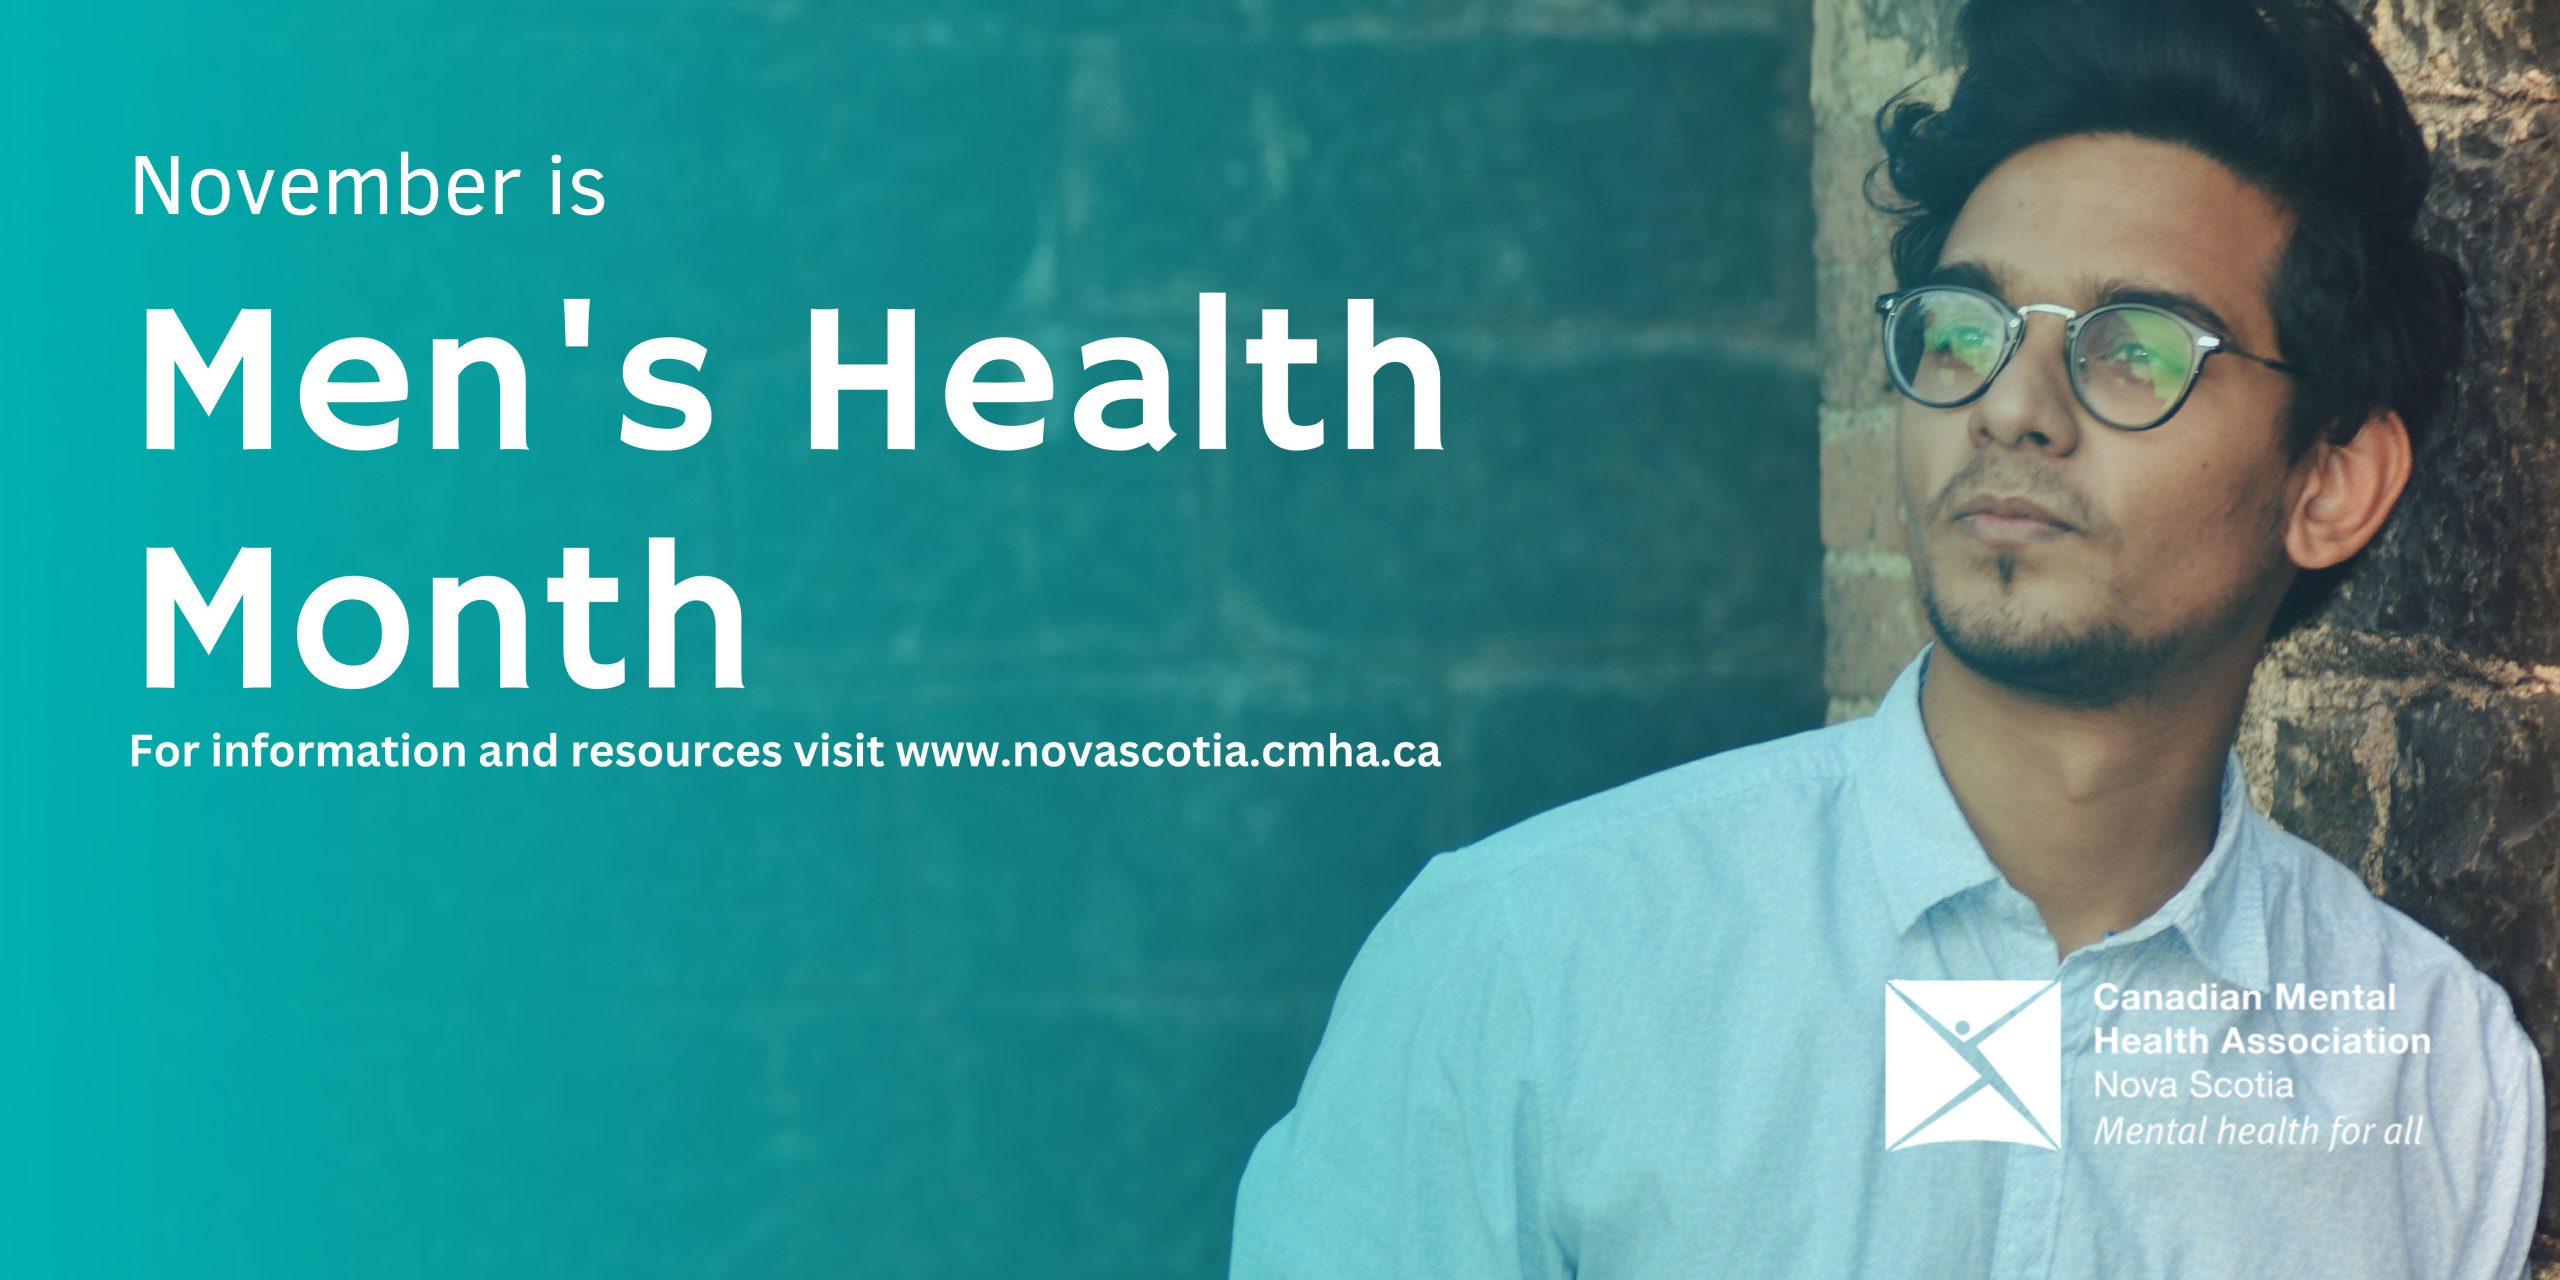 November is Men’s Health Month CMHA Nova Scotia Division